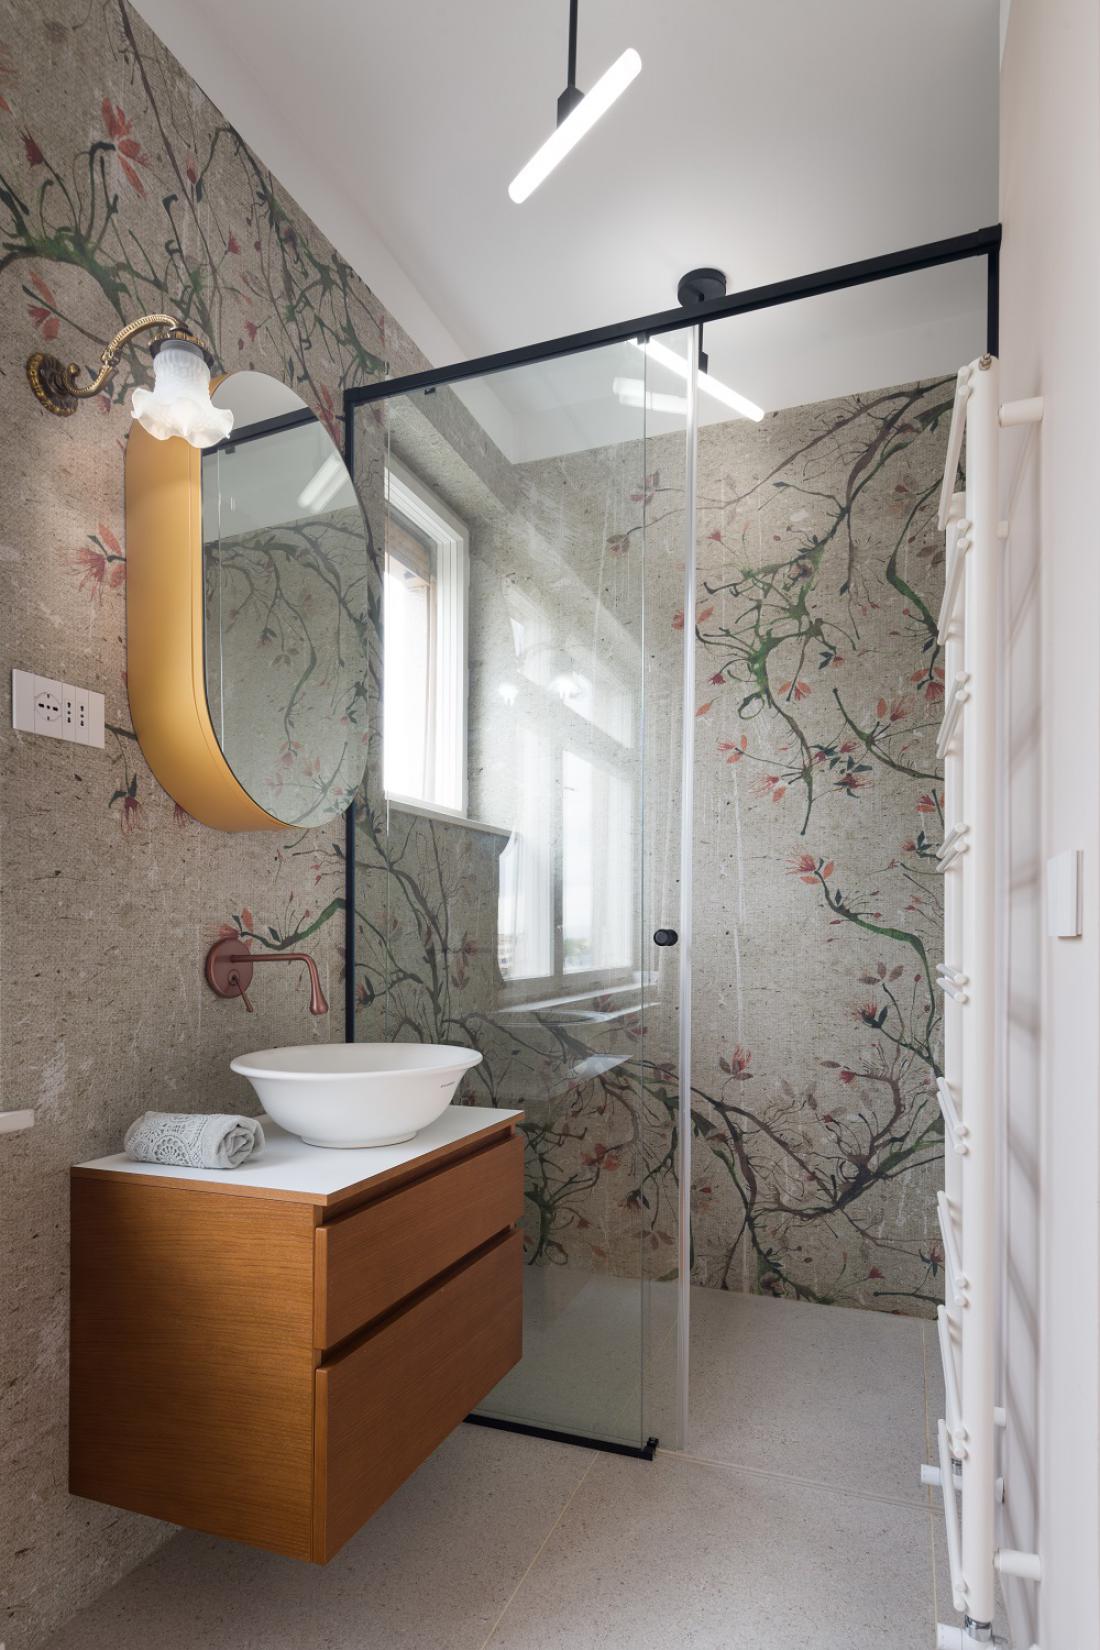 Stenske obloge v kopalnici so kombinacija klasične keramike in tapet za mokre prostore. Foto: Janez Marolt